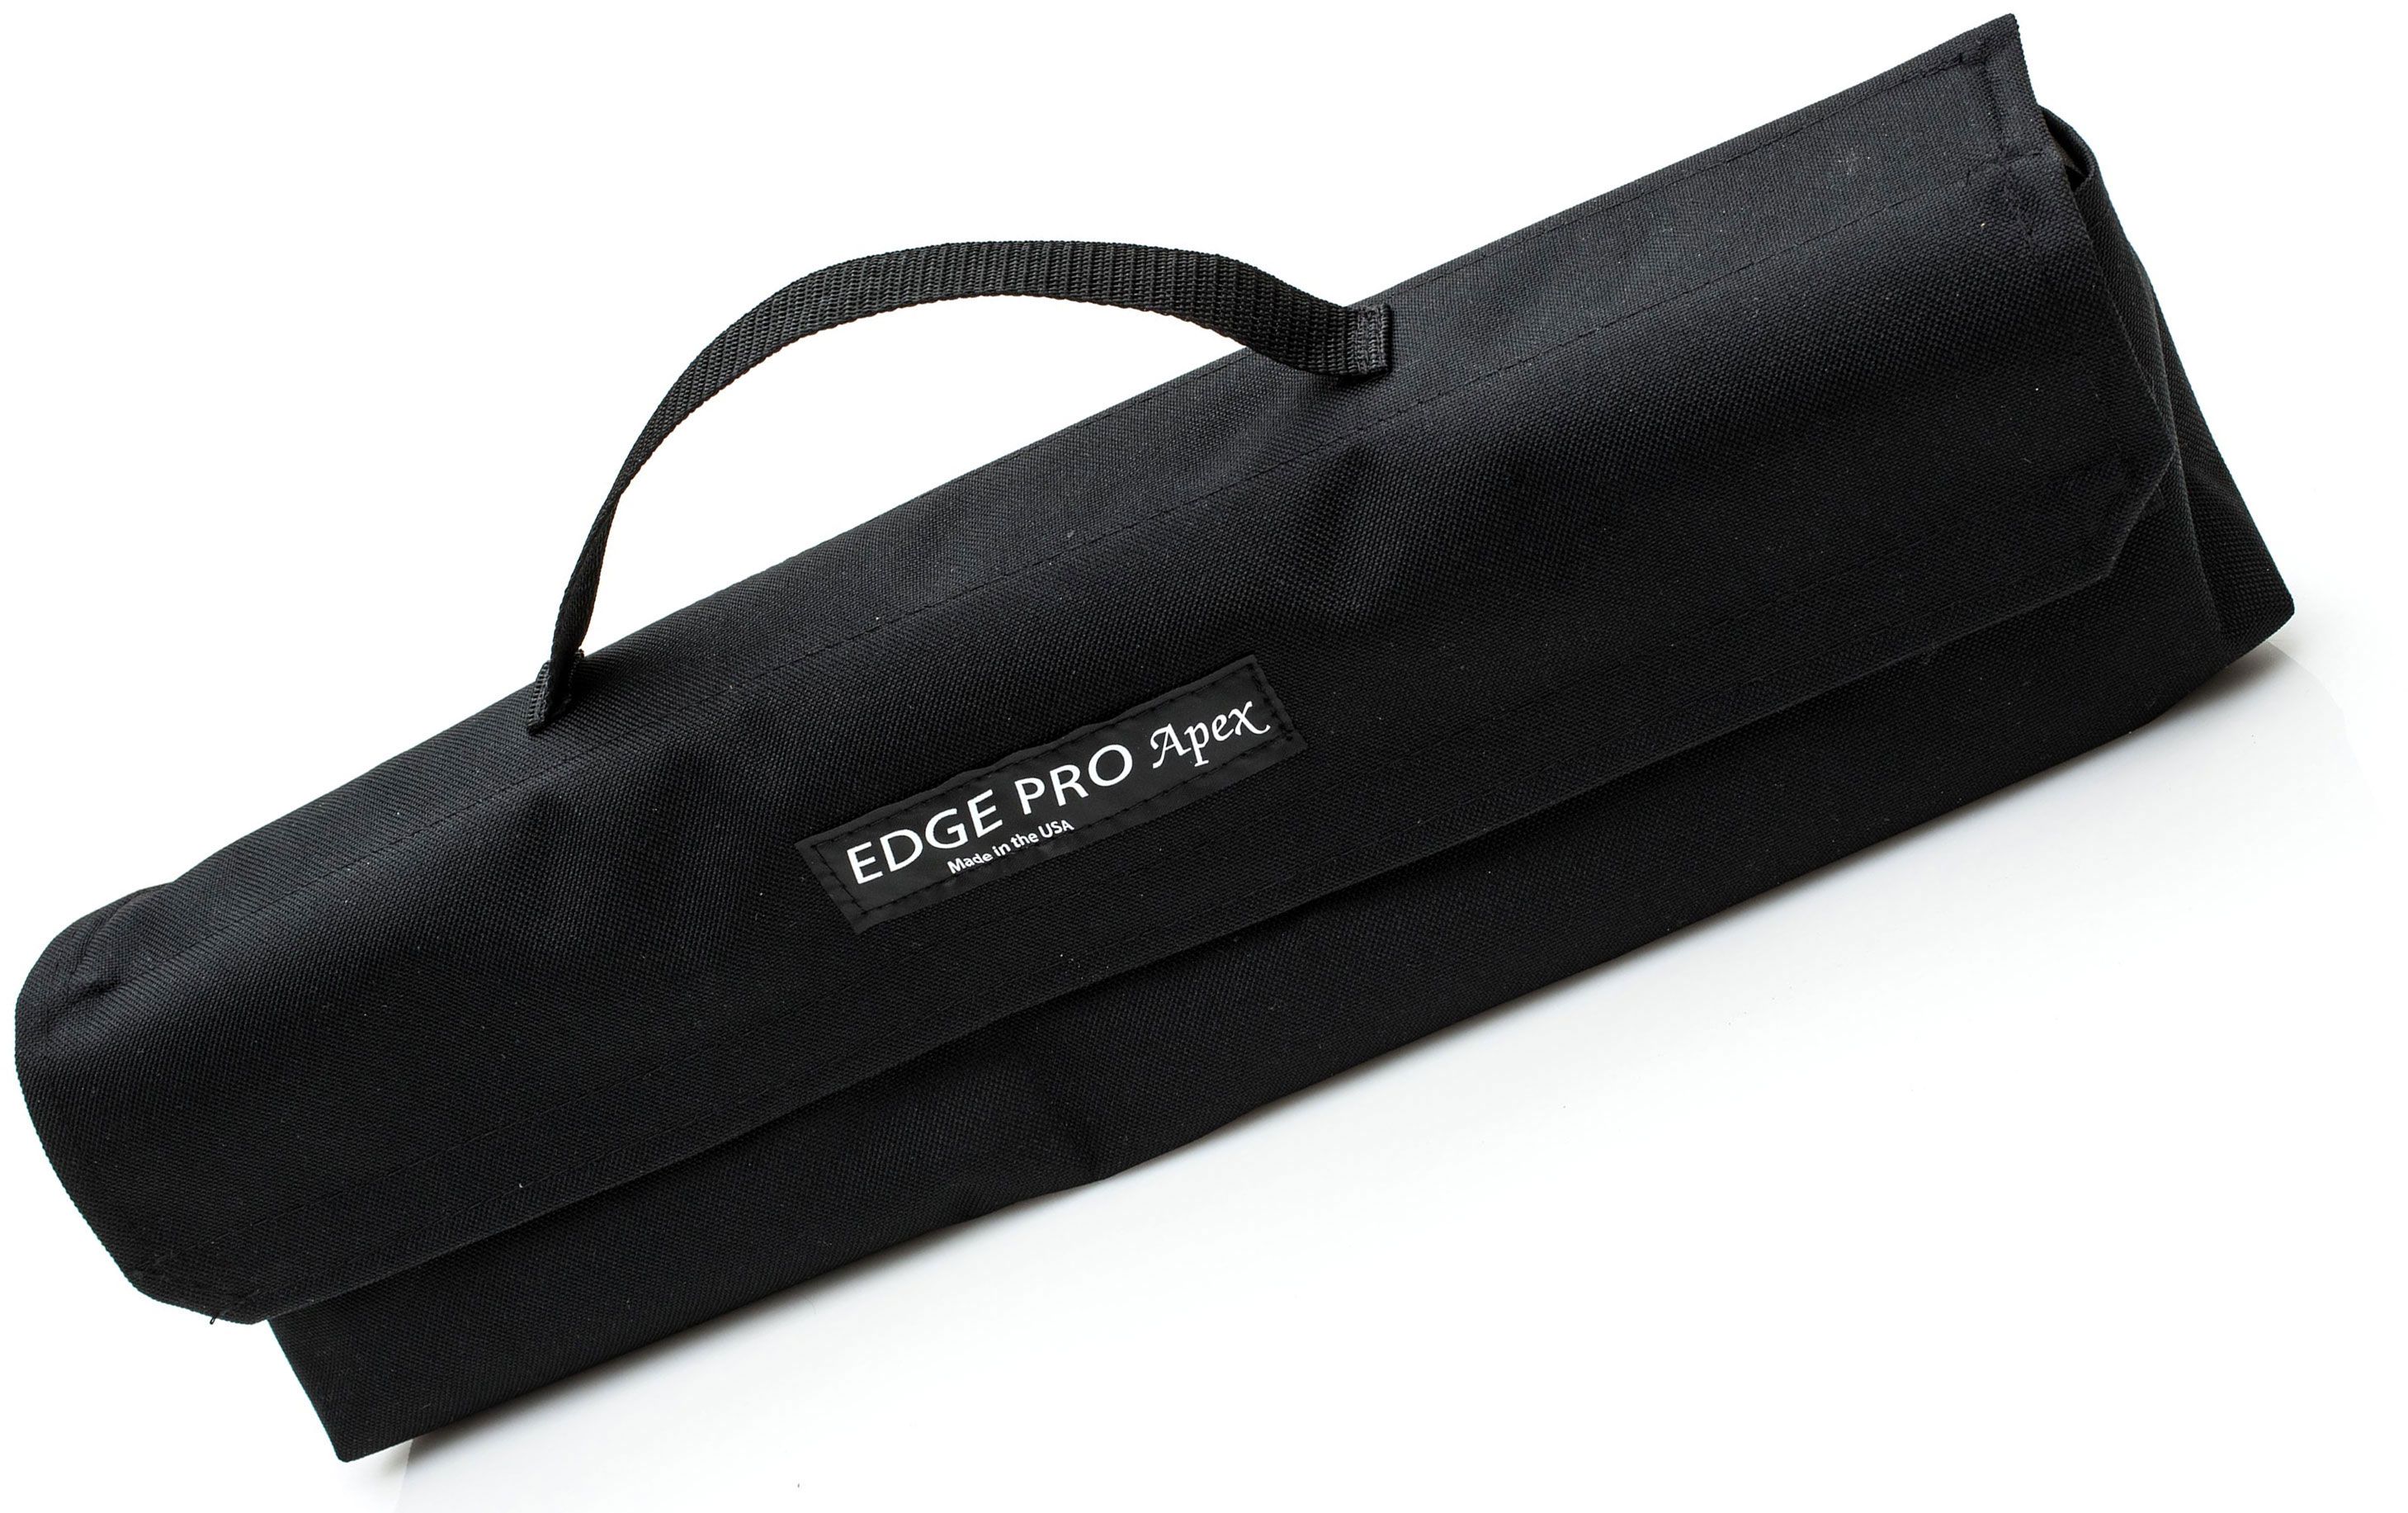 Edge Pro Apex 1 Knife Sharpener Kit - New